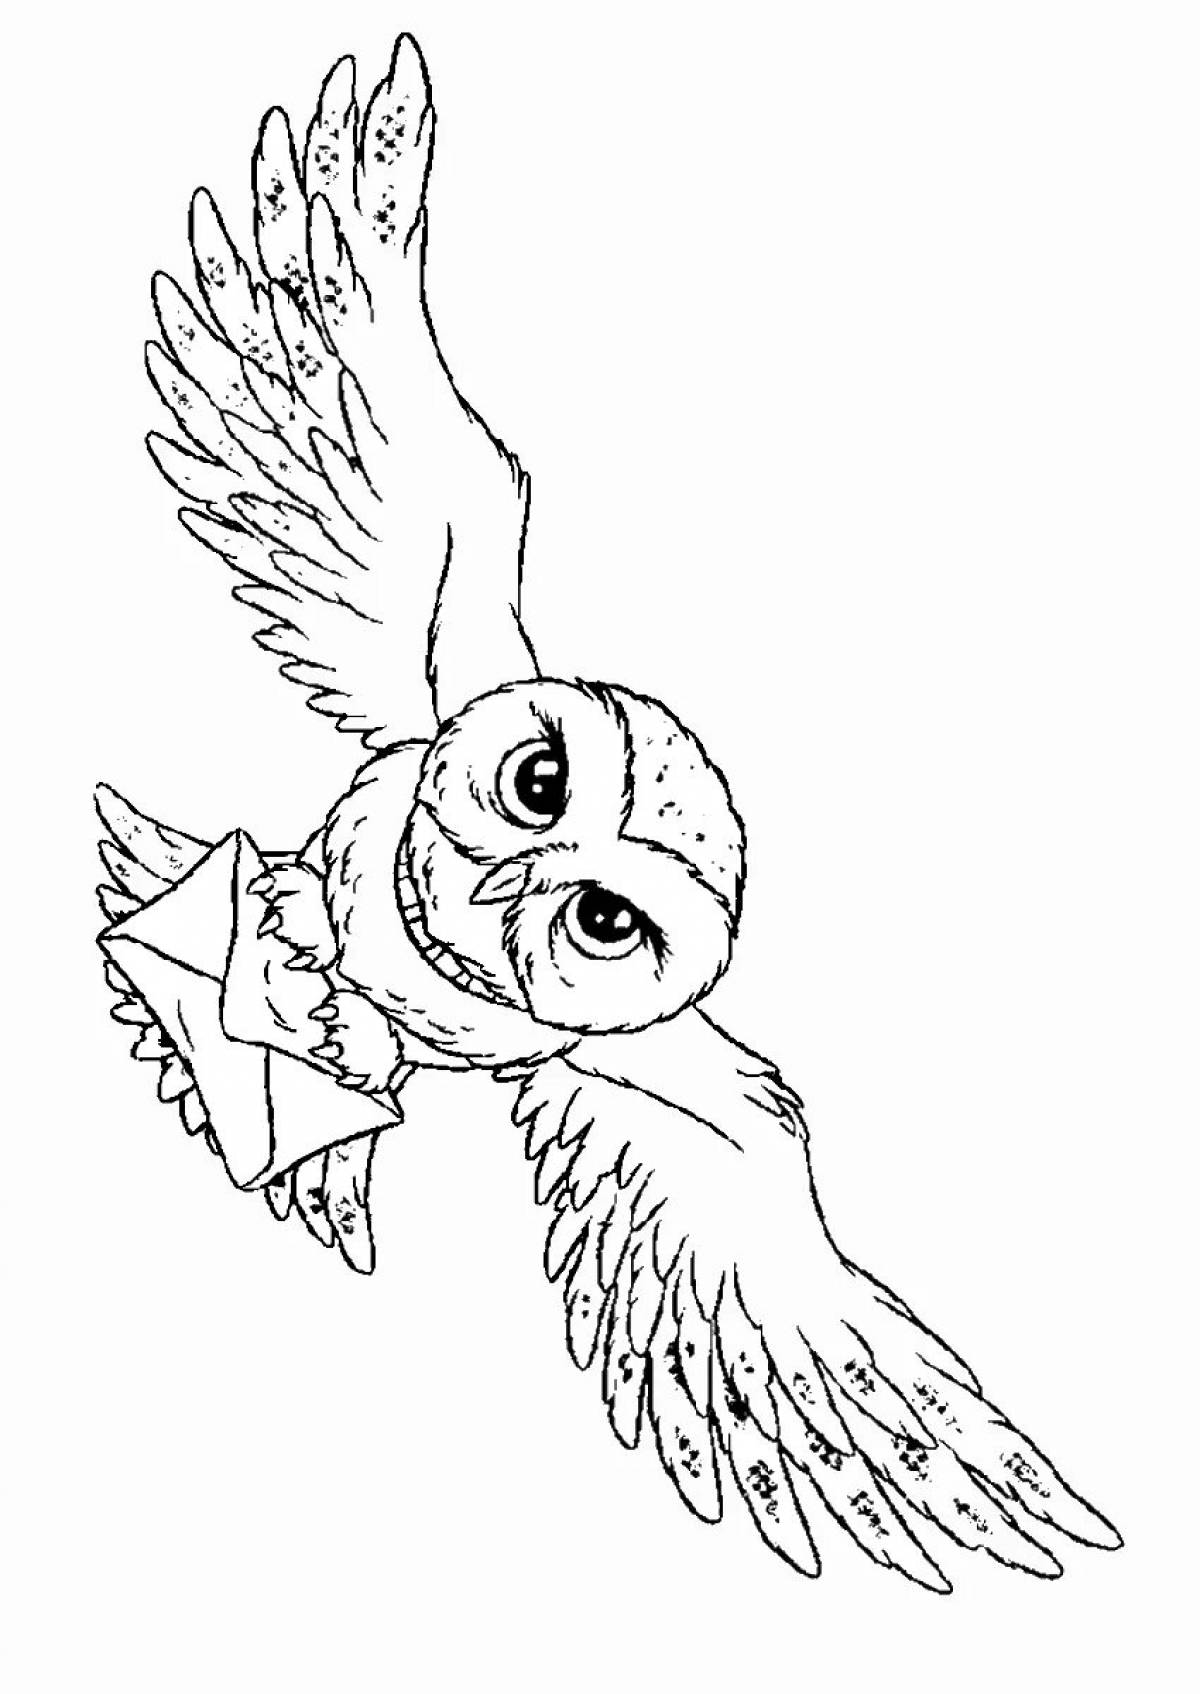 Fun coloring hedwig owl